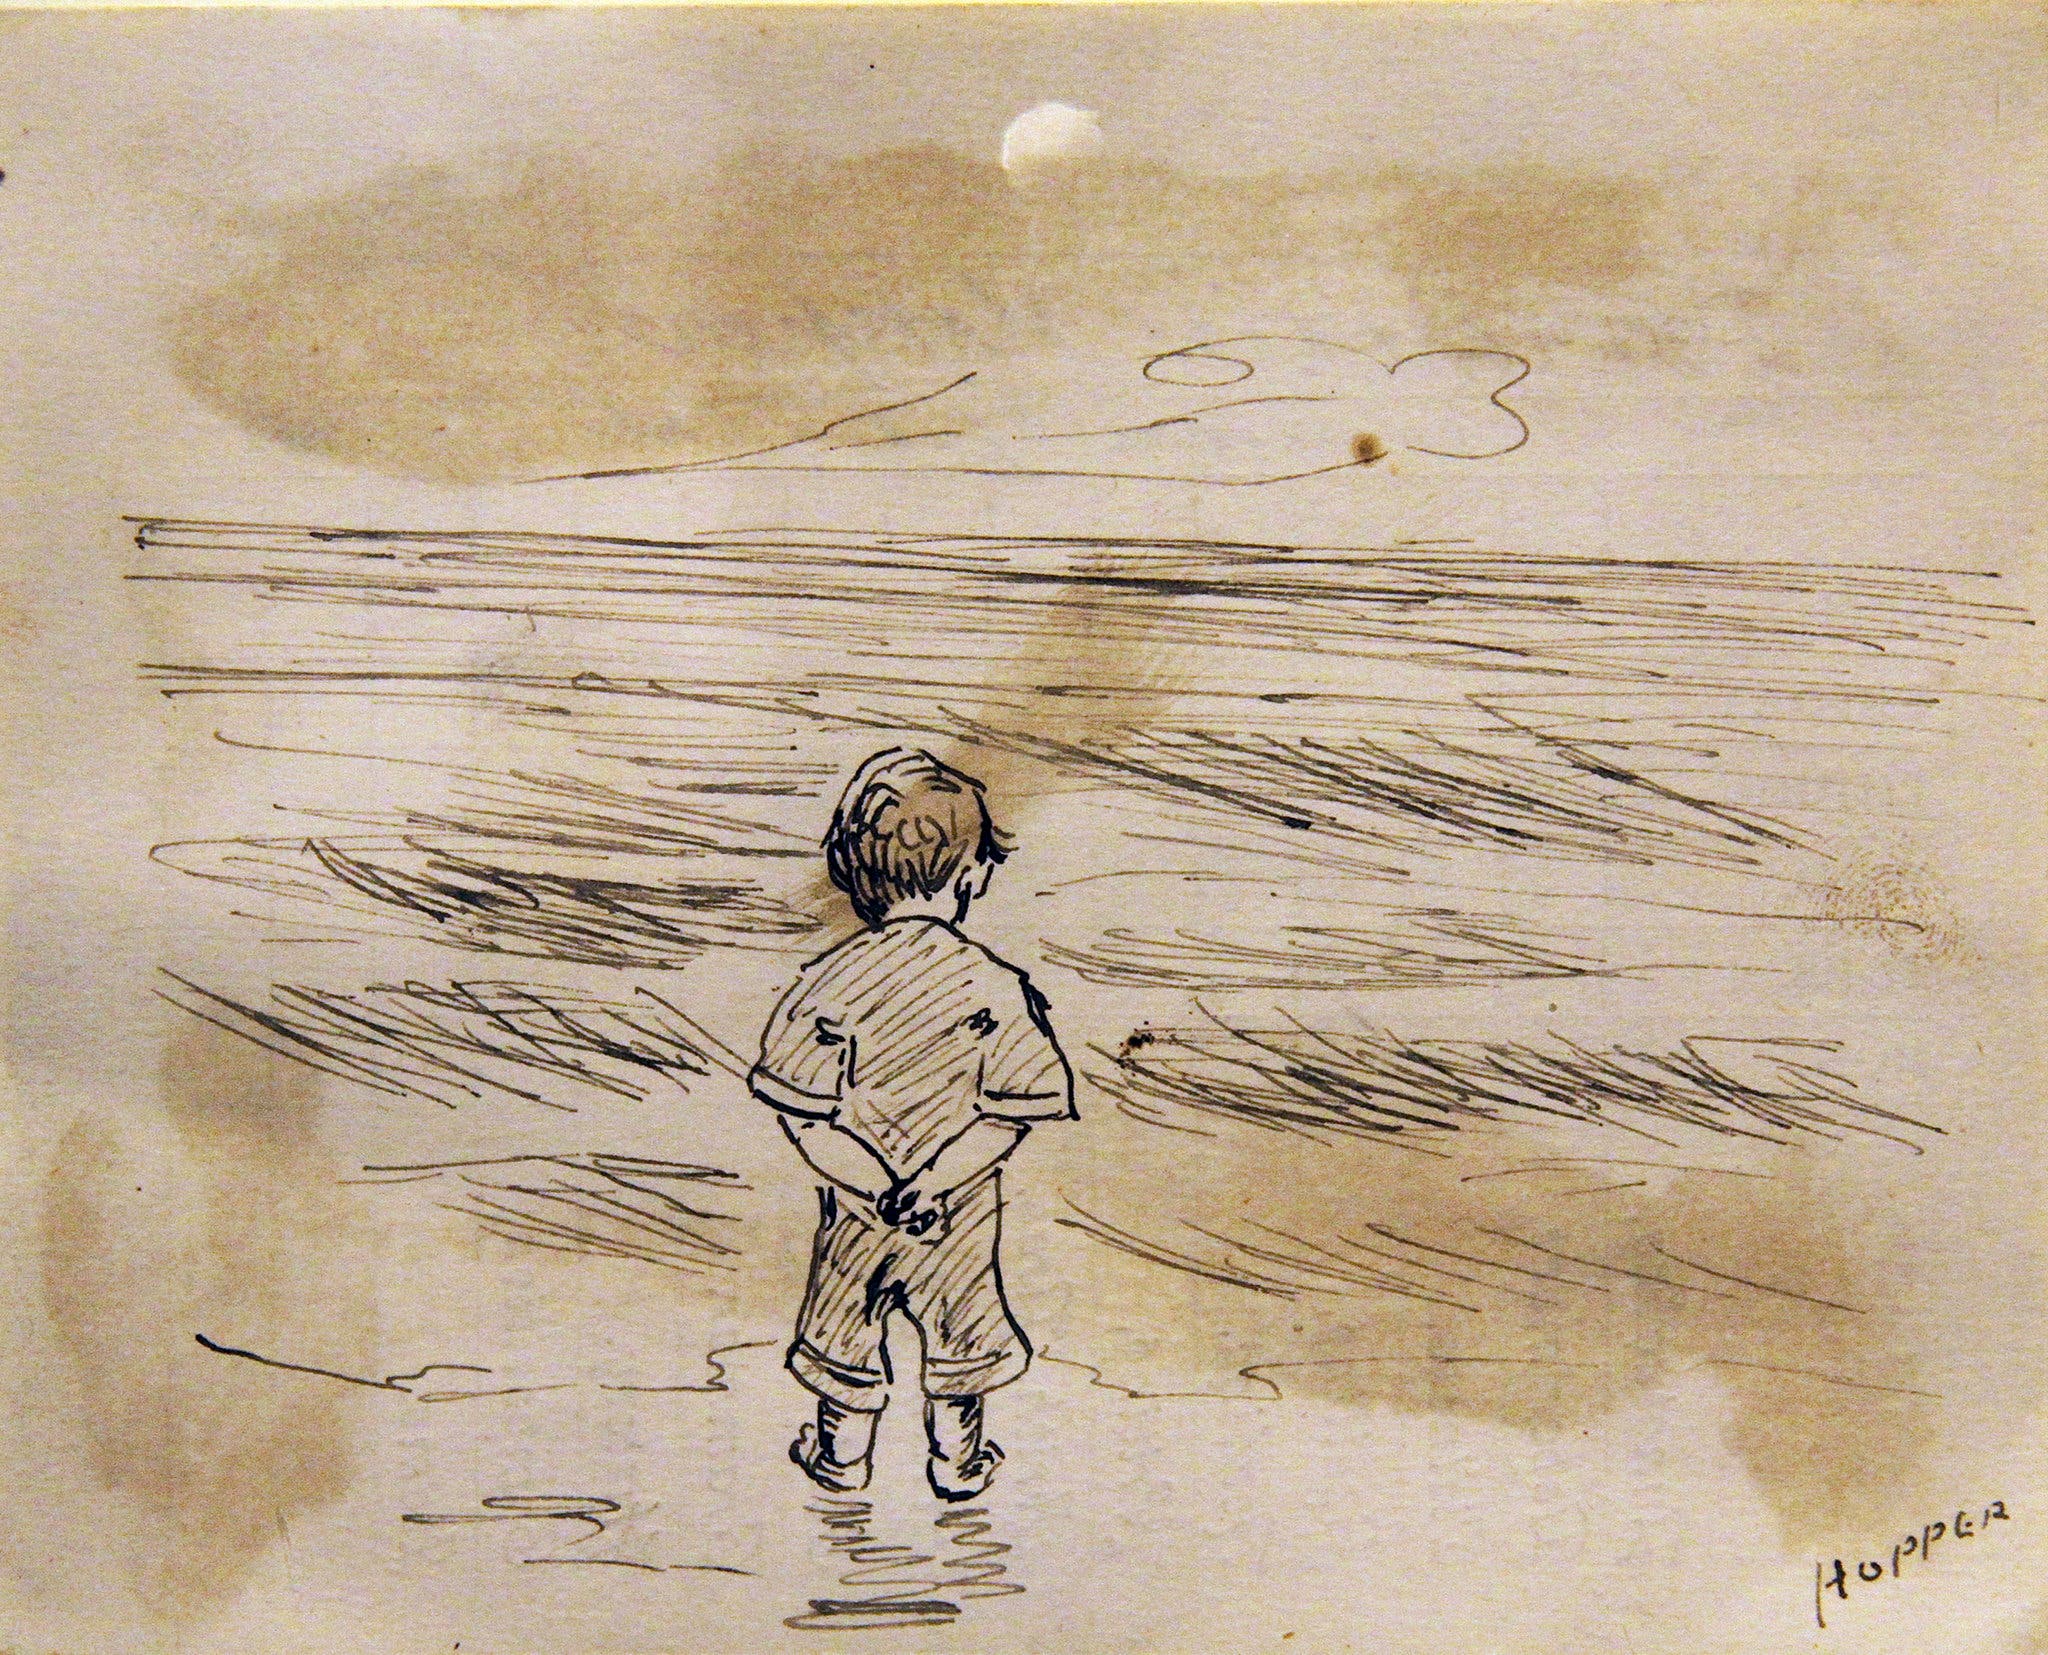 Mały chłopiec patrzący w morze by Edward Hopper - 1891 - 11,43 x 8,89 cm 